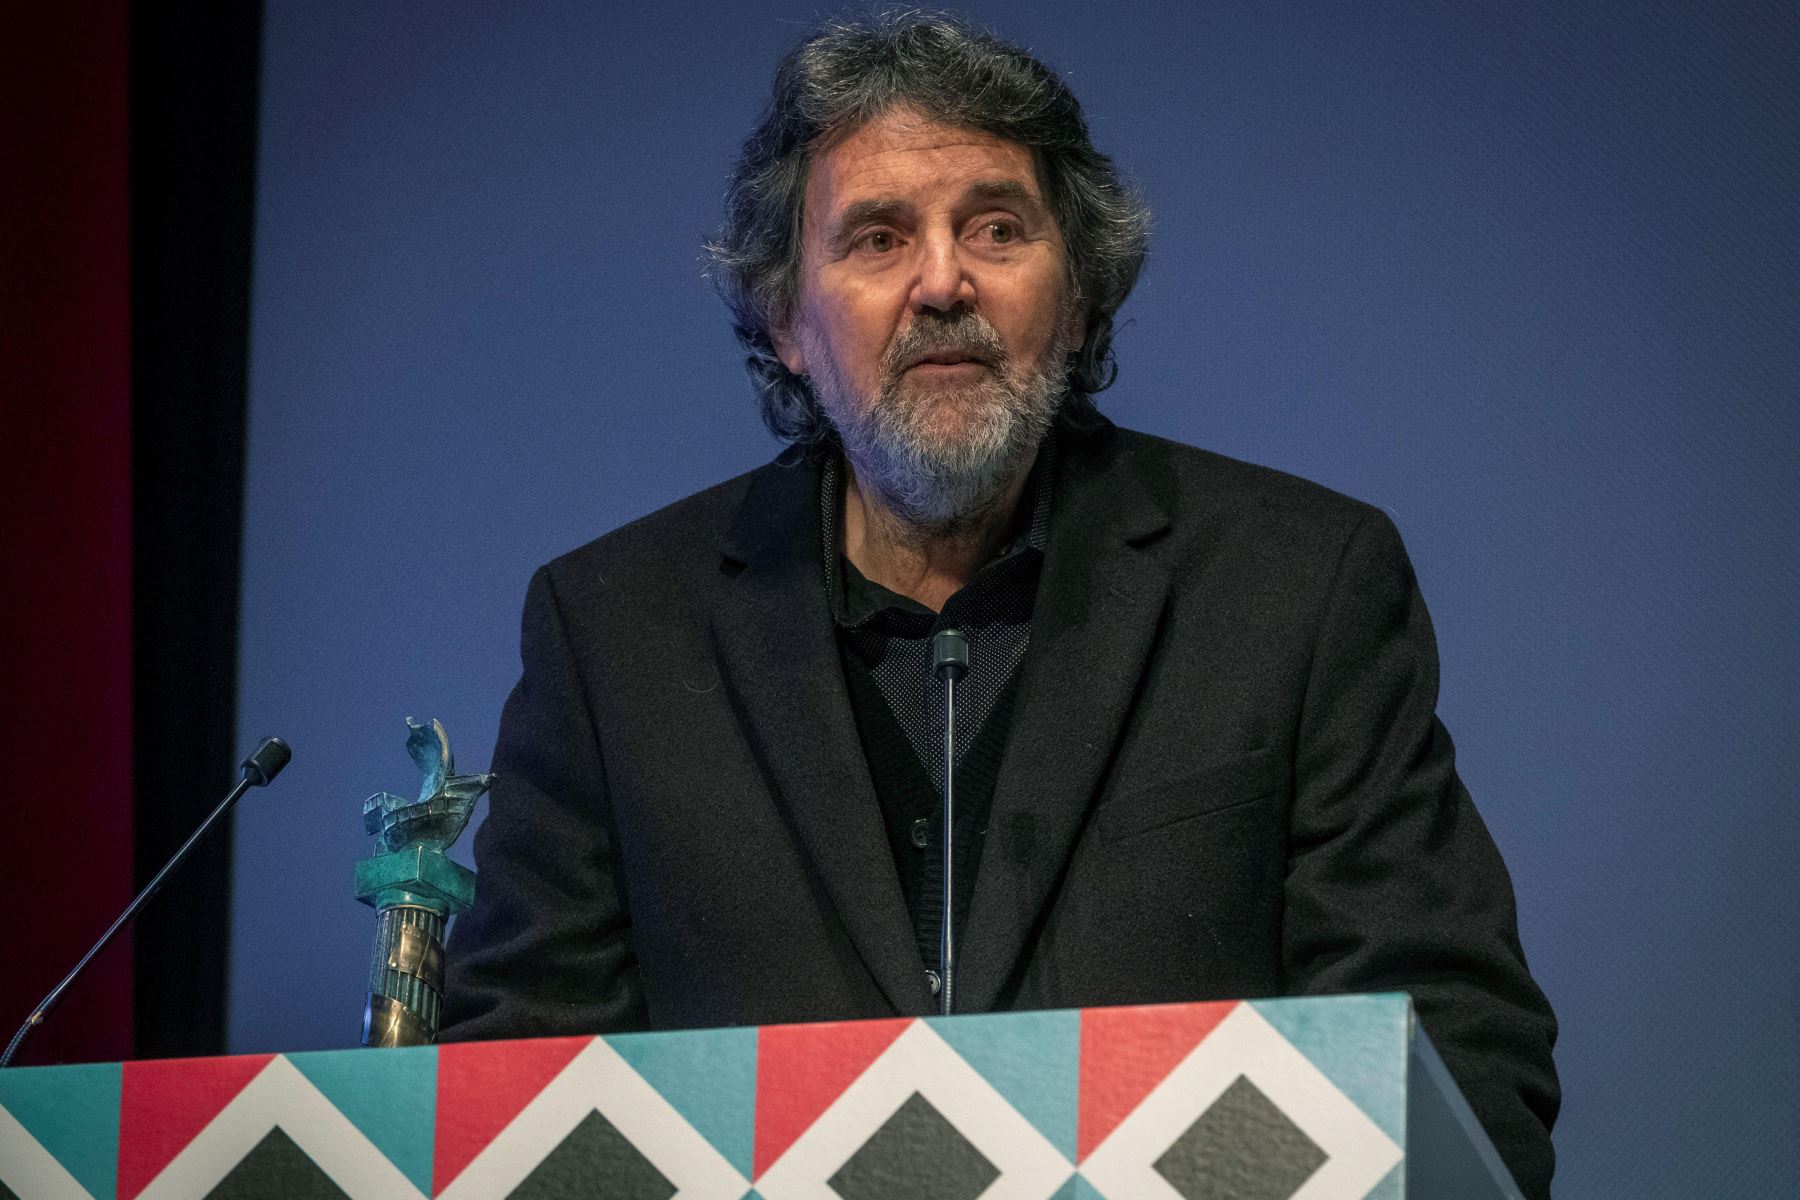 El director, productor y guionista peruano Francisco J. Lombardi recibe  máximo galardón honorífico del Festival de Cine Iberoamericano de Huelva.
Foto: EFE